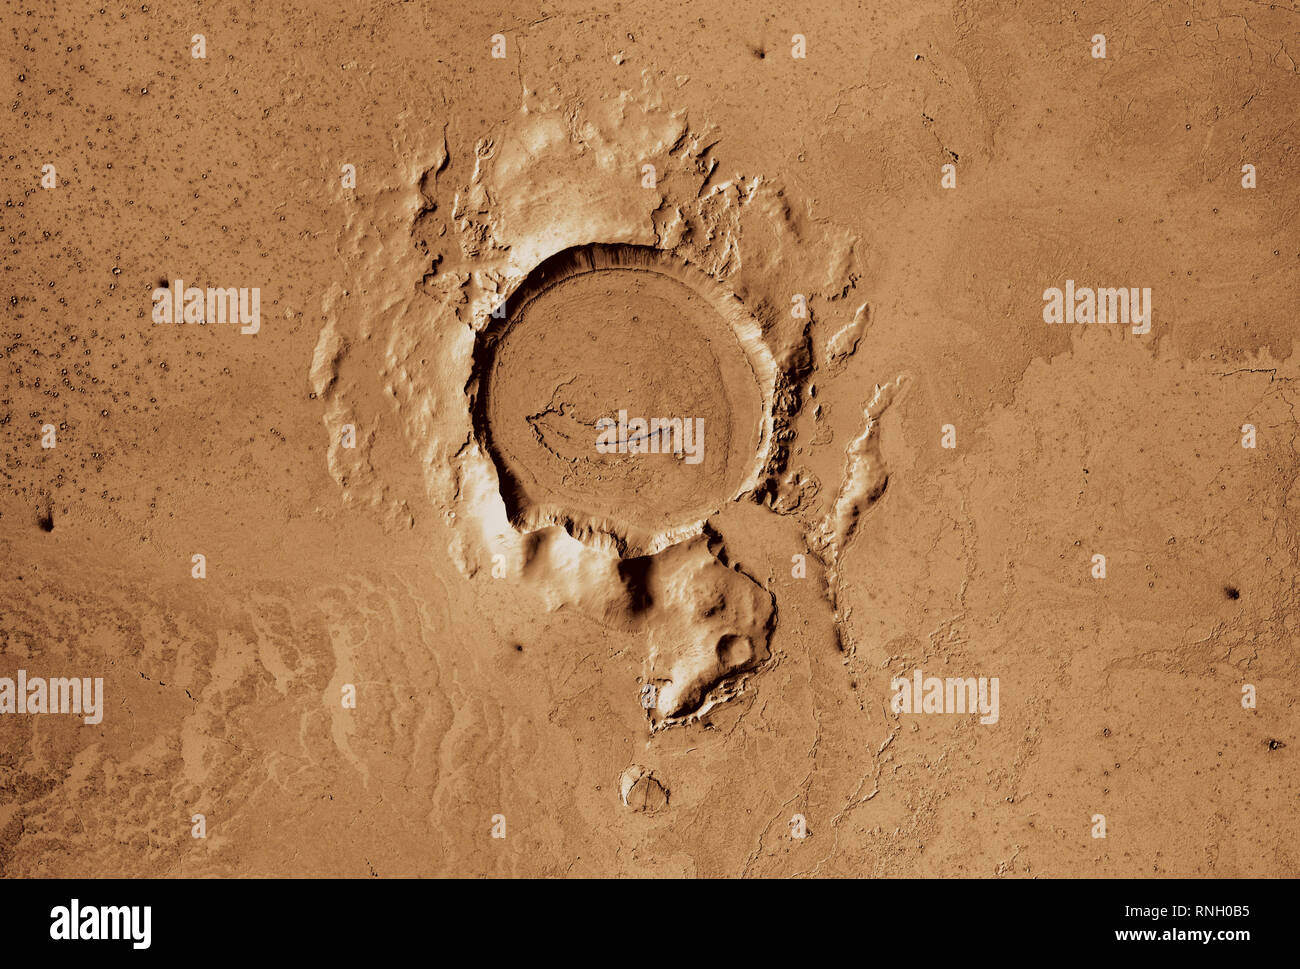 Vista de la superficie de Marte muestra un cráter Elysium Planitia Foto de stock